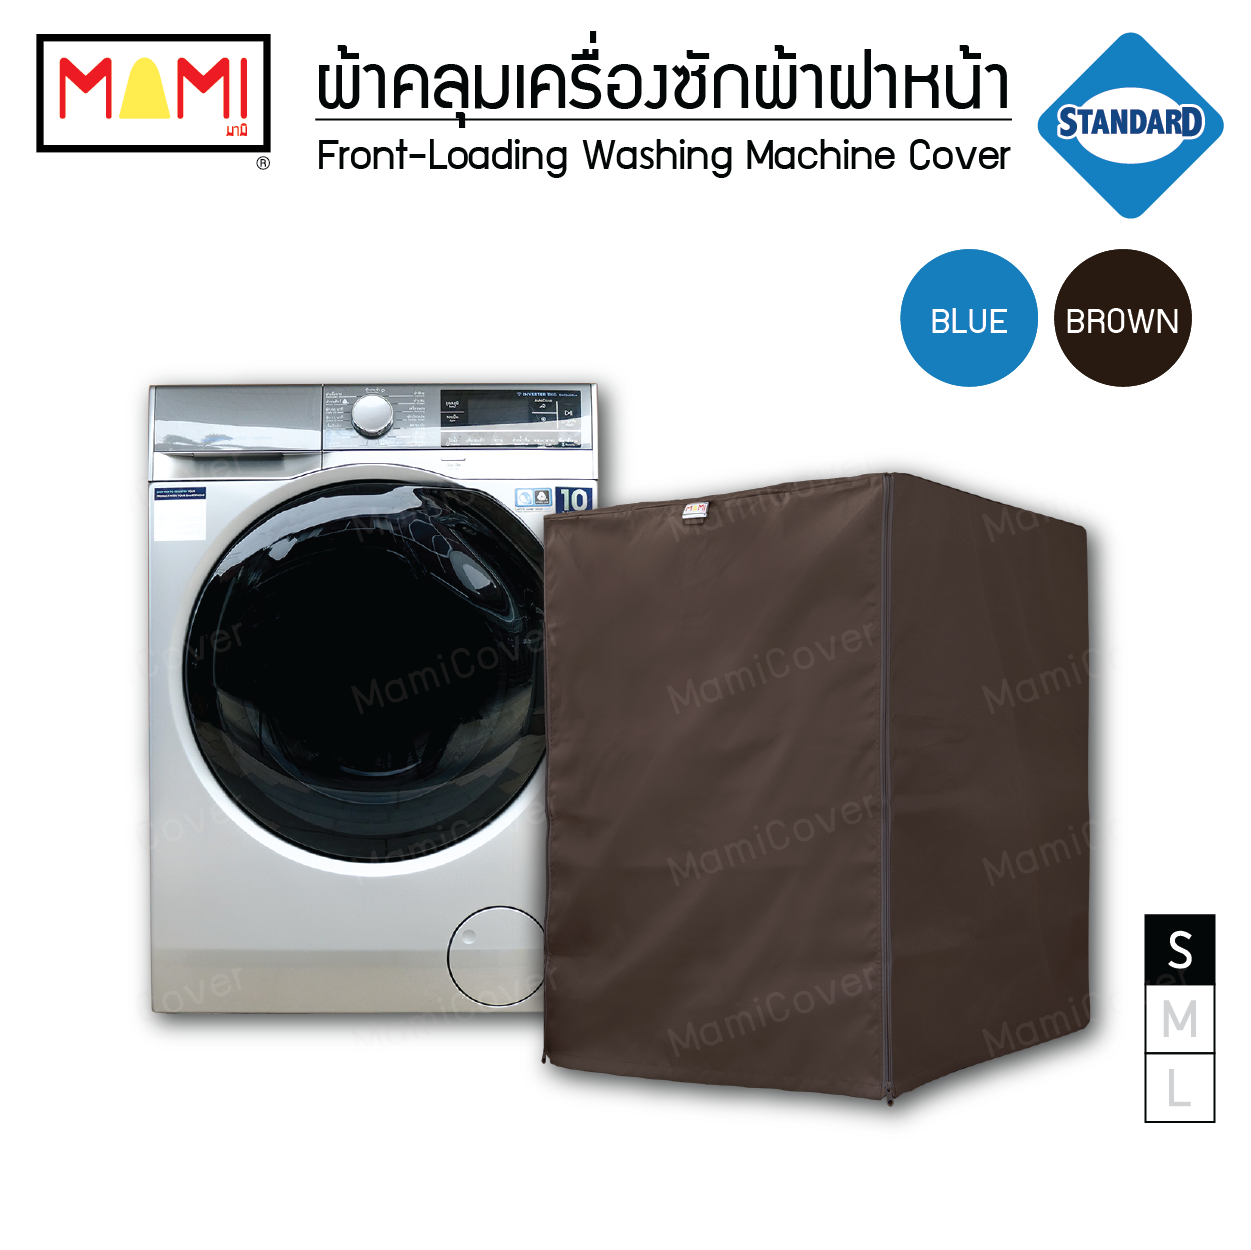 ผ้าคลุมเครื่องซักผ้าฝาหน้า กันฝุ่น กันแดด กันฝนสาด มีช่องร้อยท่อน้ำ+สายไฟ Mami รุ่น Standard  สีน้ำตาล